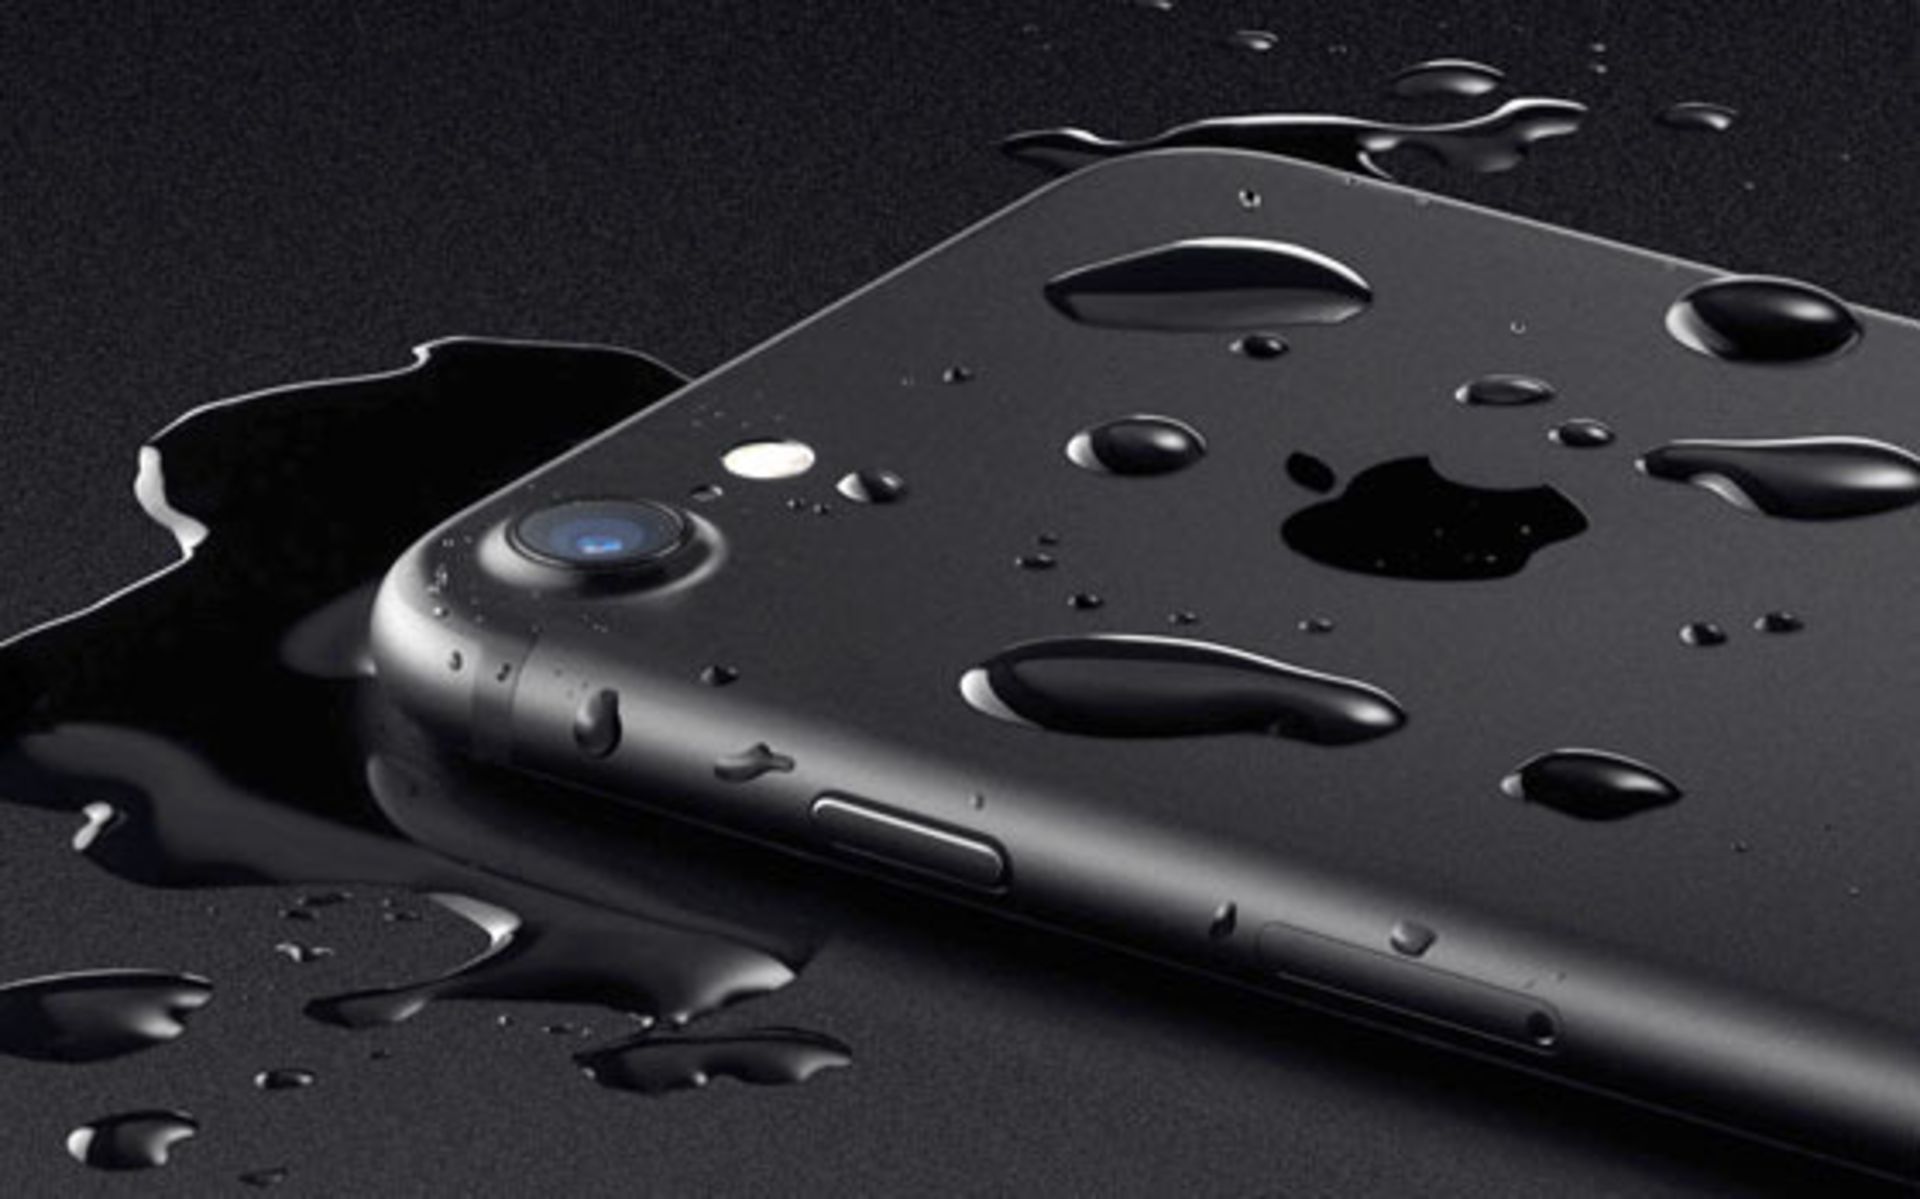 Iphone 7s plus waterproof